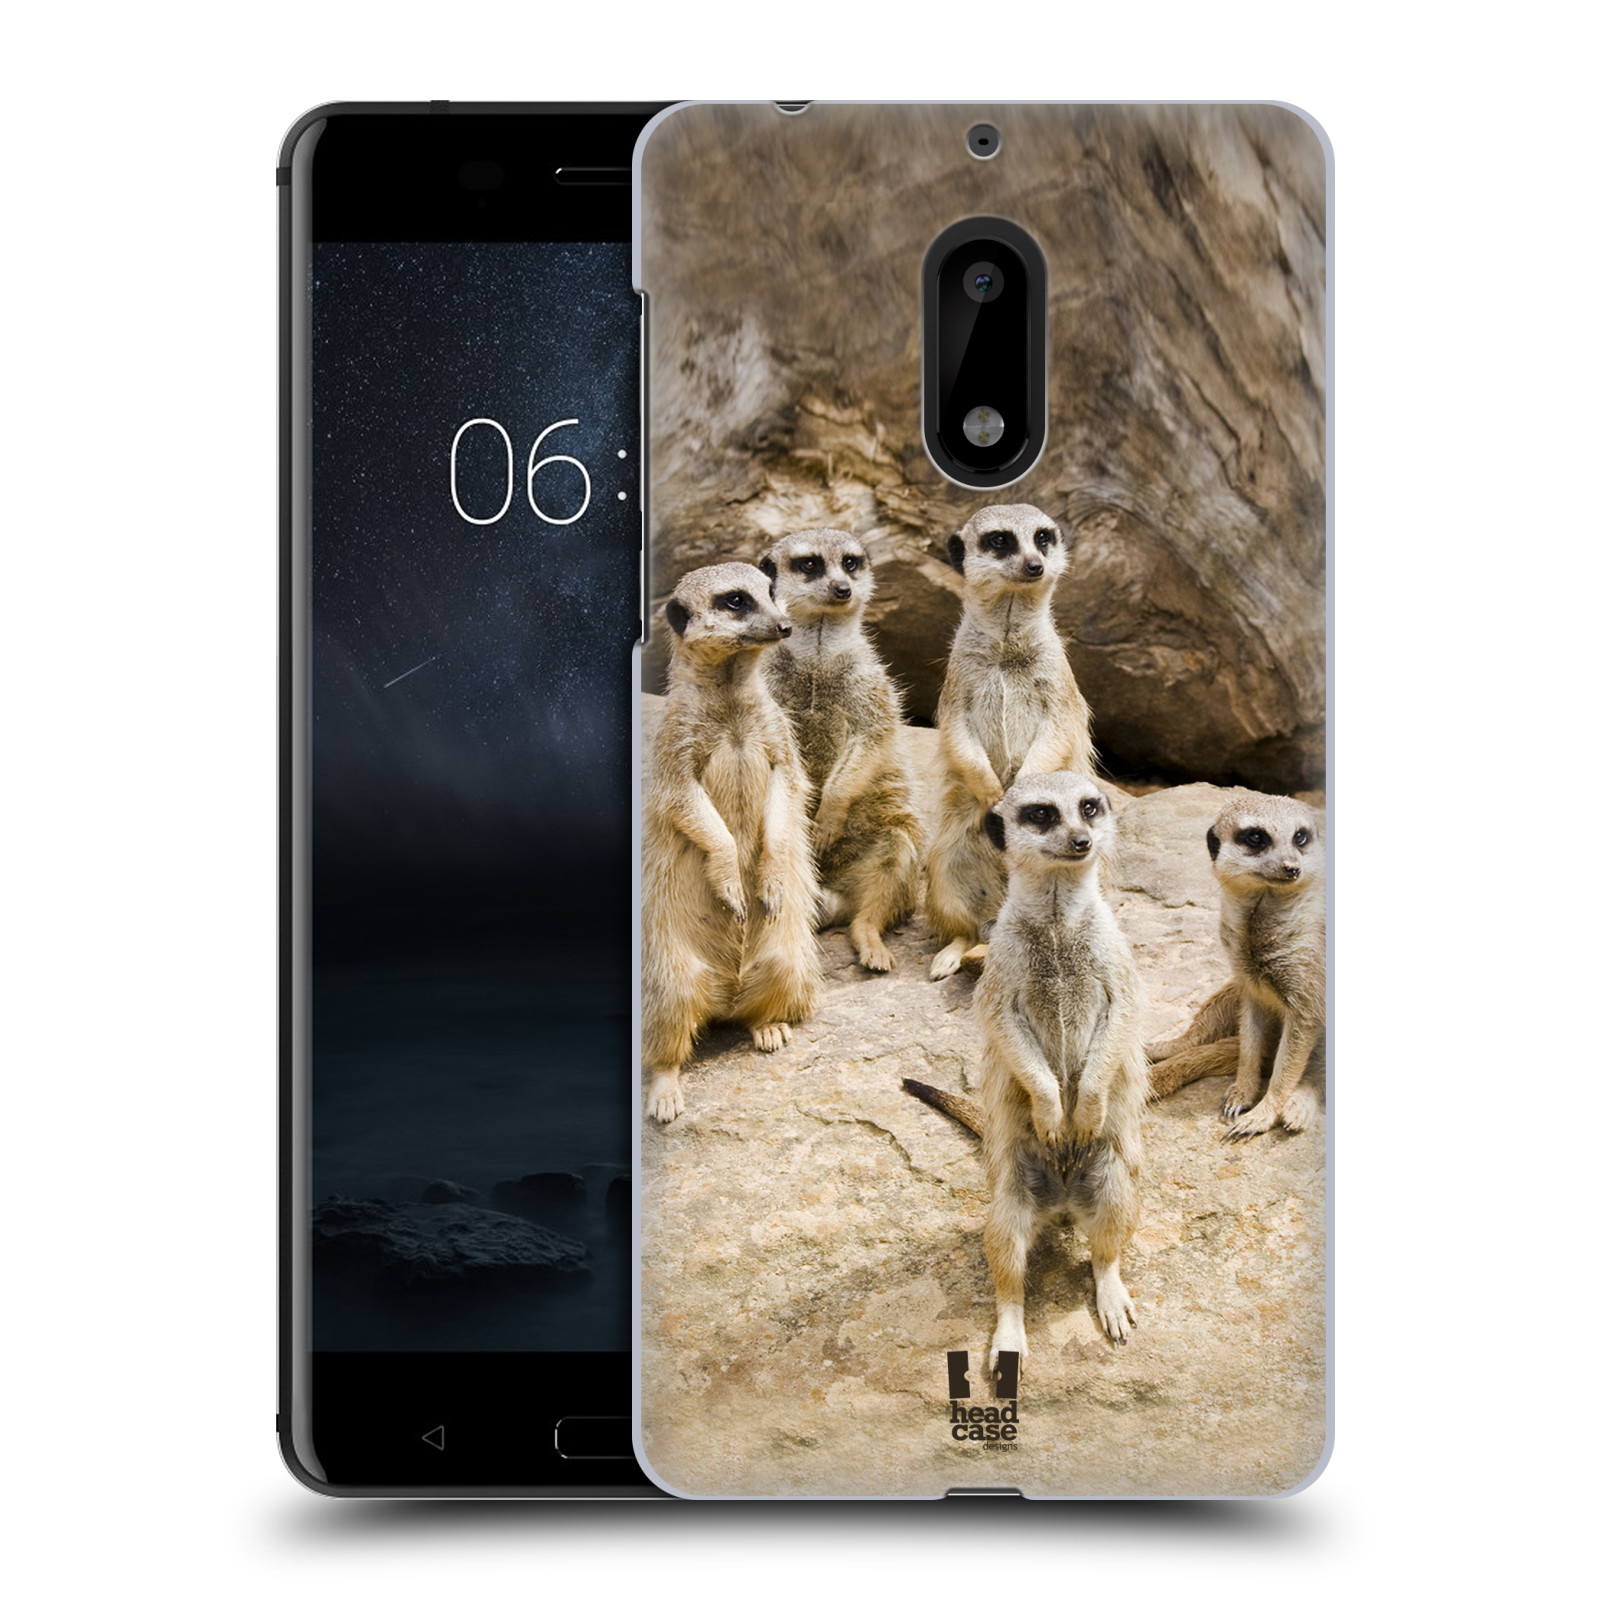 HEAD CASE plastový obal na mobil Nokia 6 vzor Divočina, Divoký život a zvířata foto SURIKATA